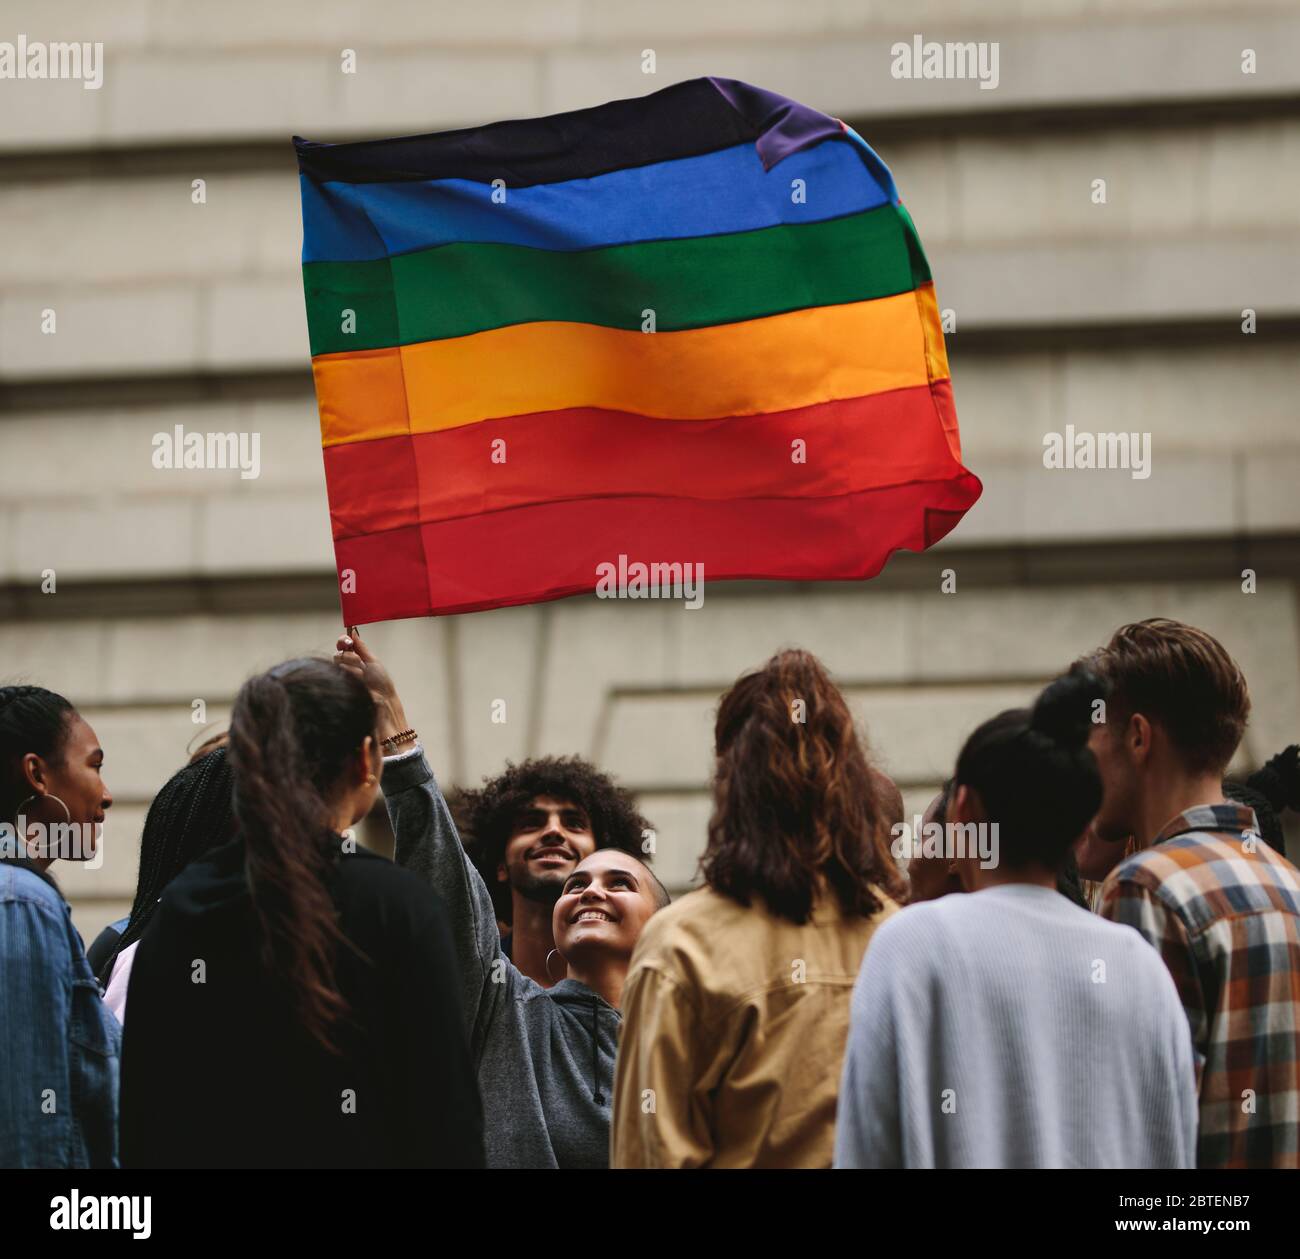 La gente participa en el Desfile del orgullo anual y en las celebraciones en la ciudad. Mujer joven que agitaba la bandera del arco iris gay con gente de pie. Foto de stock